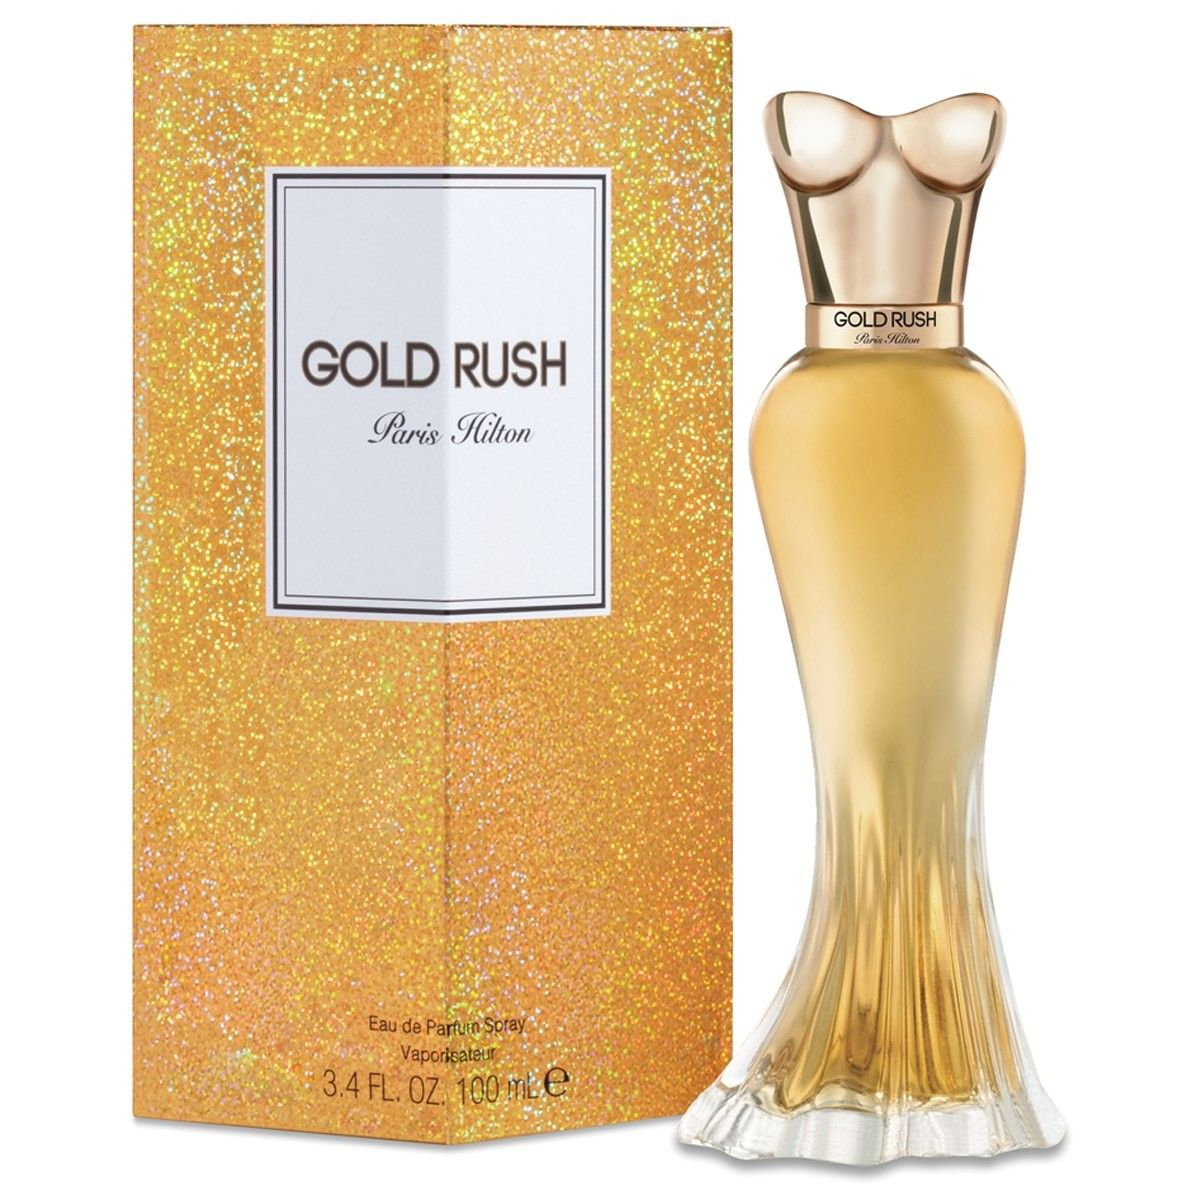 Gold Rush by Paris Hilton 100 ml Eau de Parfum